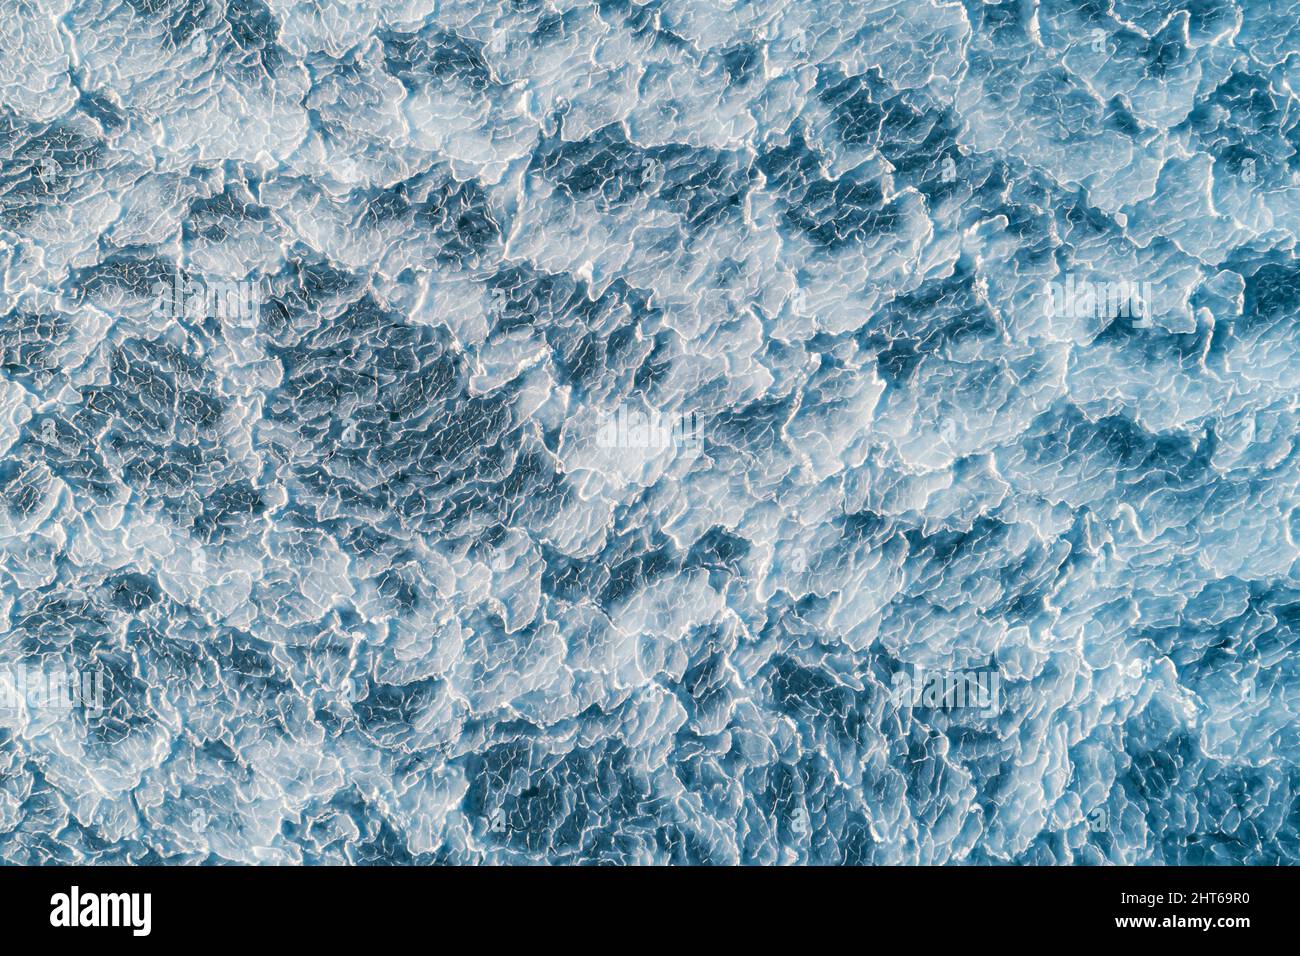 Vue aérienne de dessus en bas de la surface de glace. Texture de la surface de la mer gelée Banque D'Images